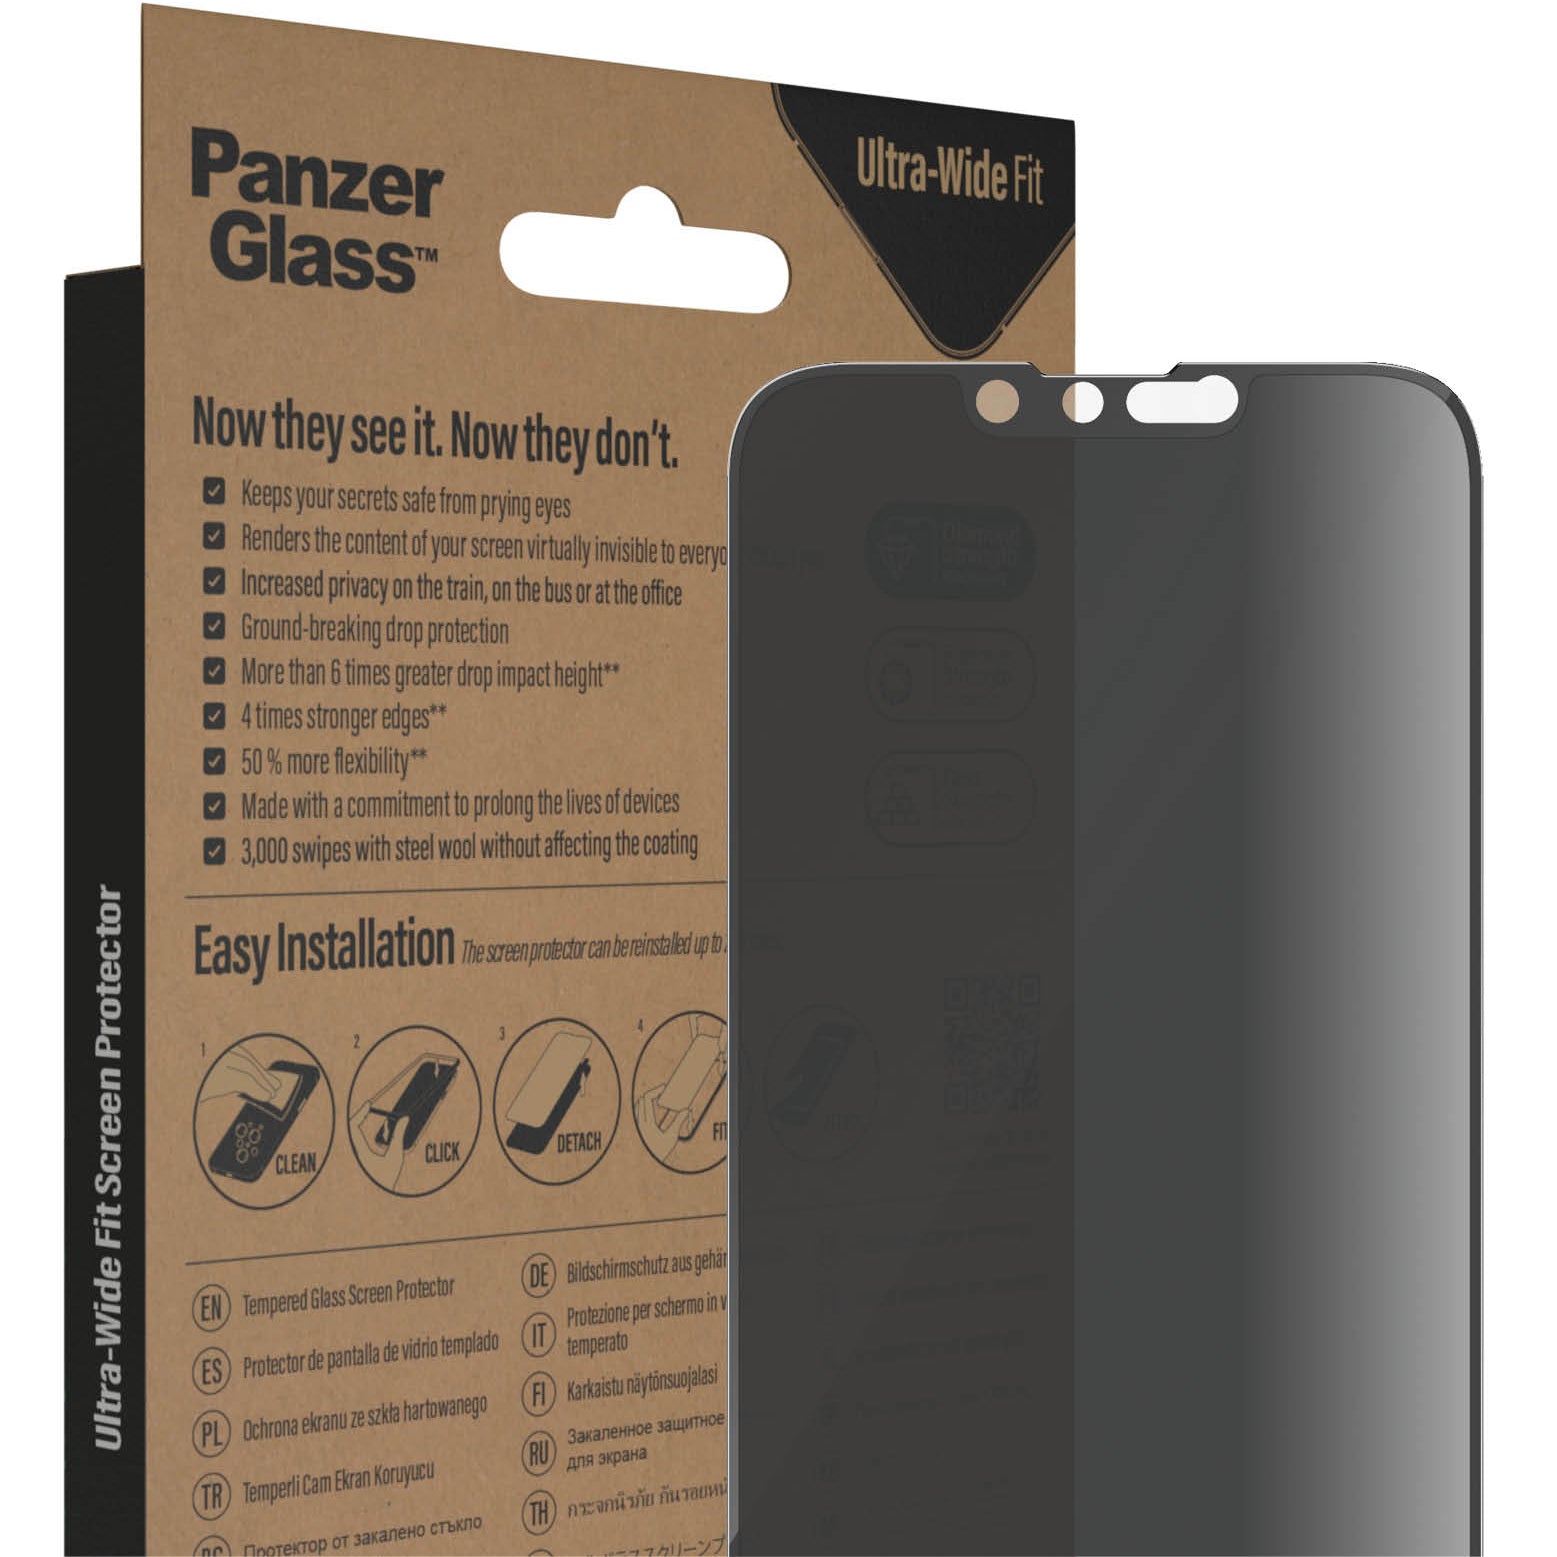 Gehärtetes Glas für das gesamte Display PanzerGlass Ultra-Wide Fit Privacy + EasyAligner für iPhone 14 / 13 Pro / 13, Getönte mit schwarzer Rahmen